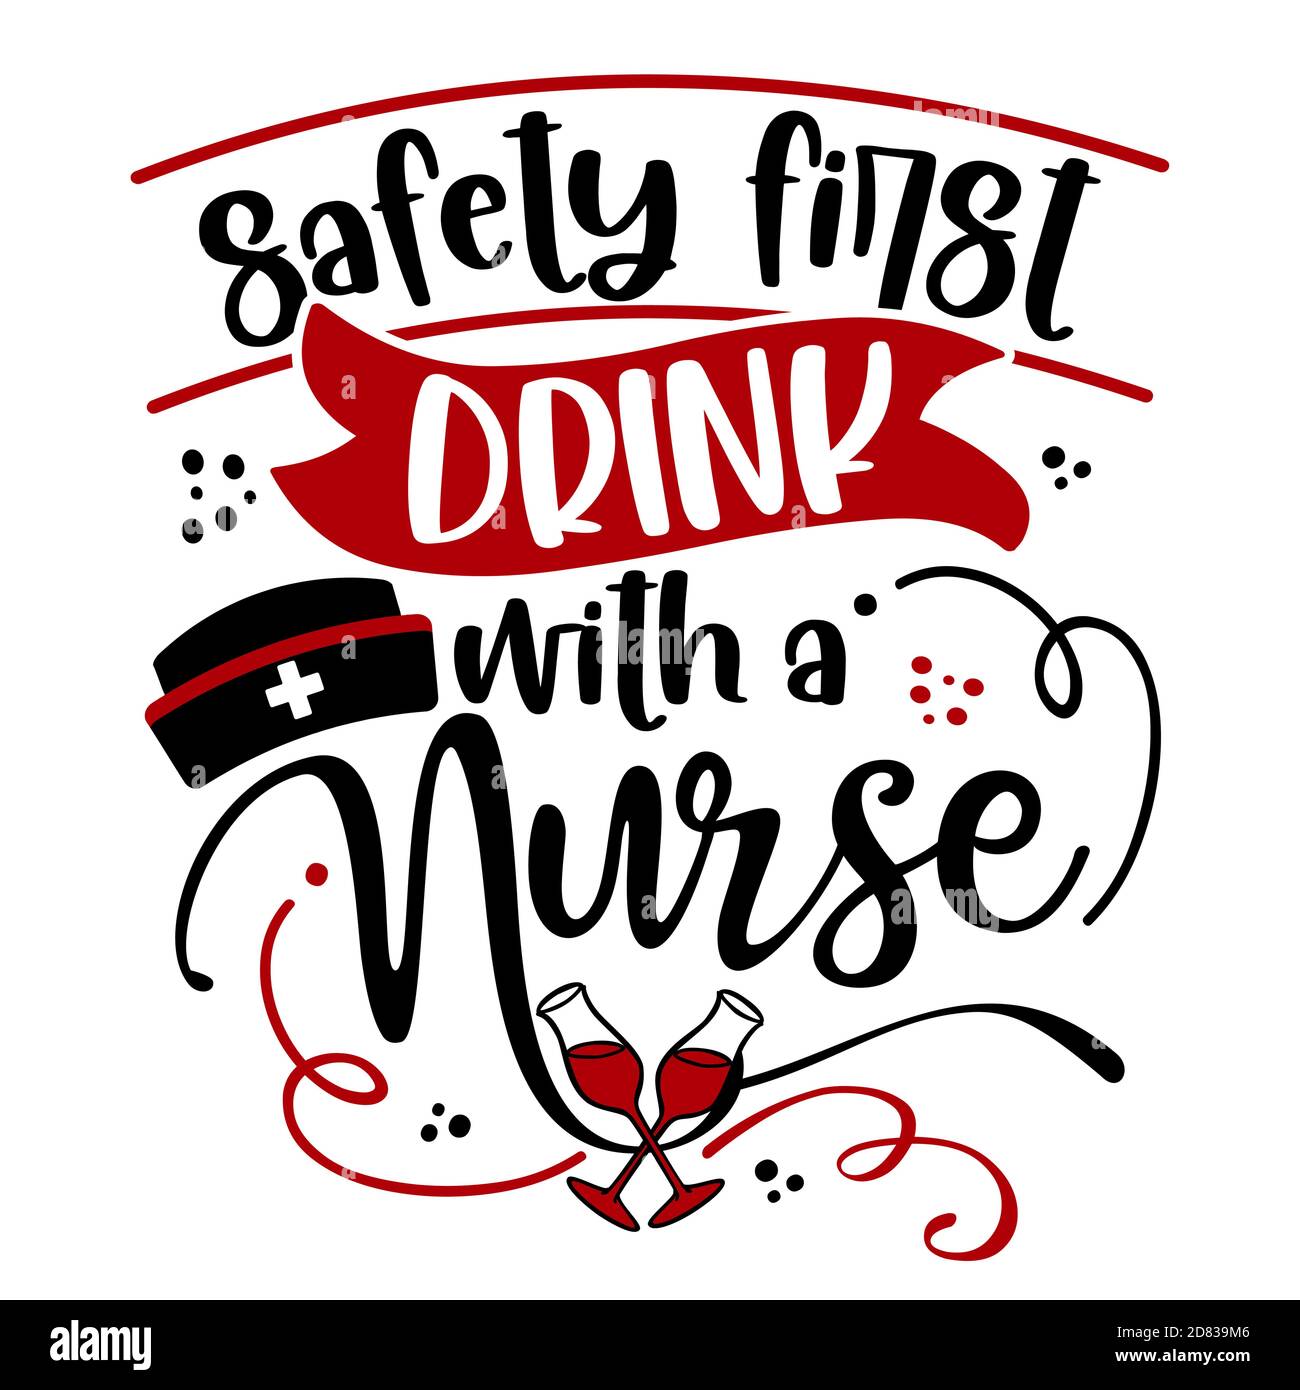 Sicherheit zuerst trinken mit einer Krankenschwester - STOP Coronavirus (2019-ncov) Krankenschwester T-Shirt. Krankenpflege, Arzt, Arzt, Krankenschwester Praktiker T-Shirt Design templa Stock Vektor